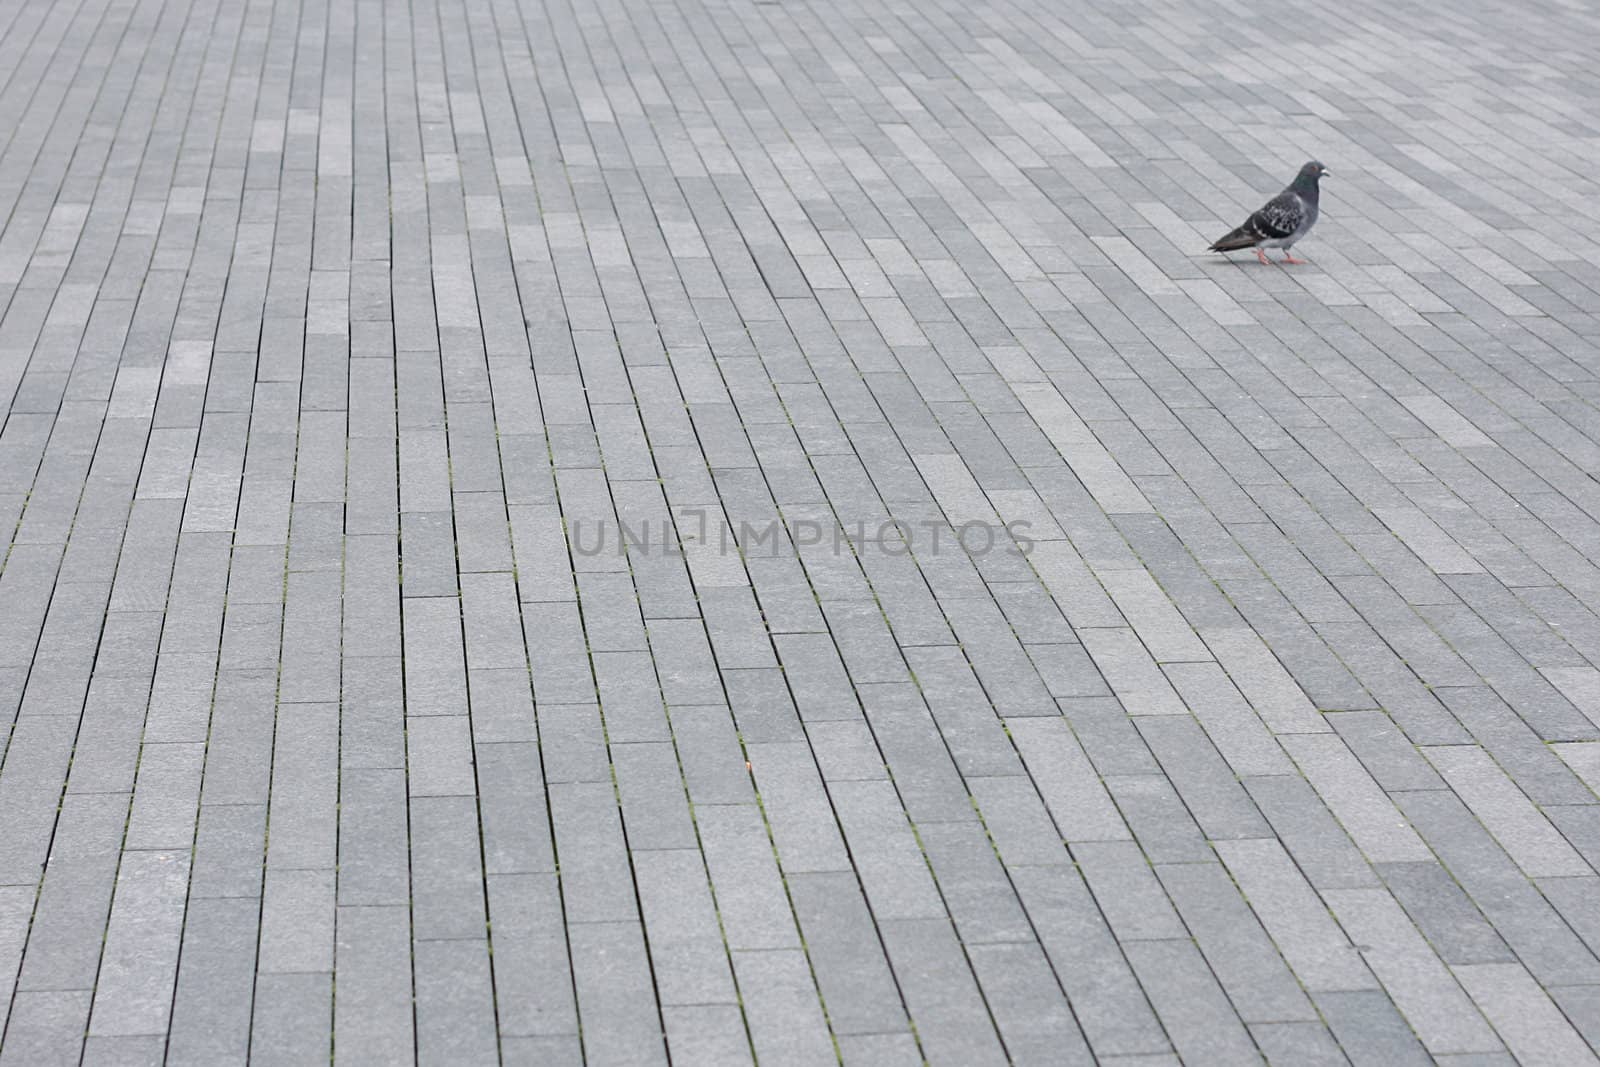 Pigeon by leeser